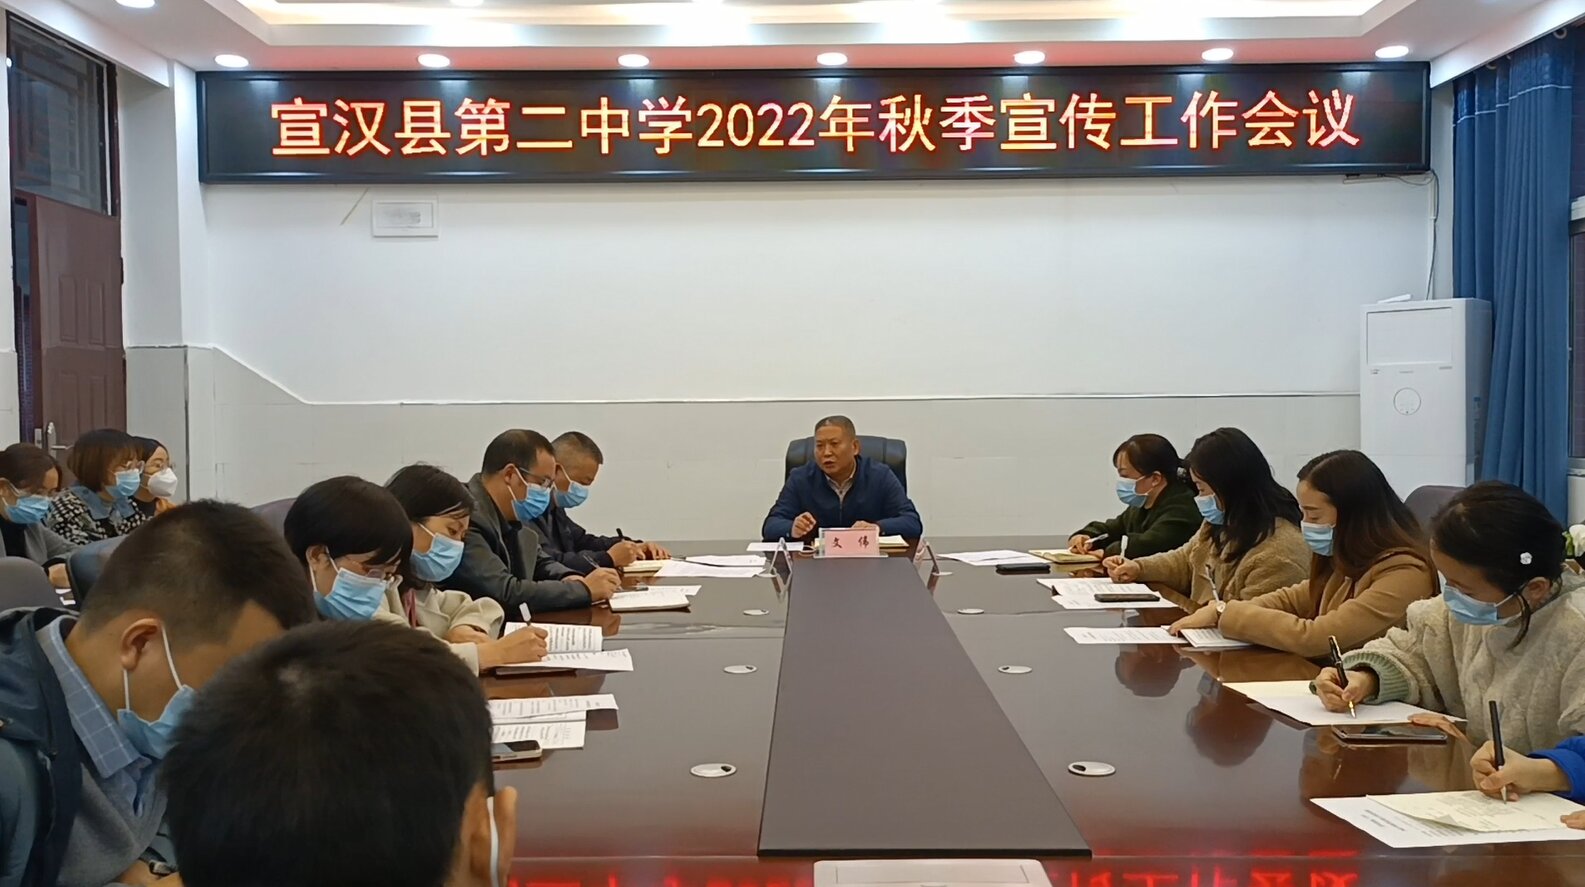 宣汉二中召开2022年秋季宣传工作专题会